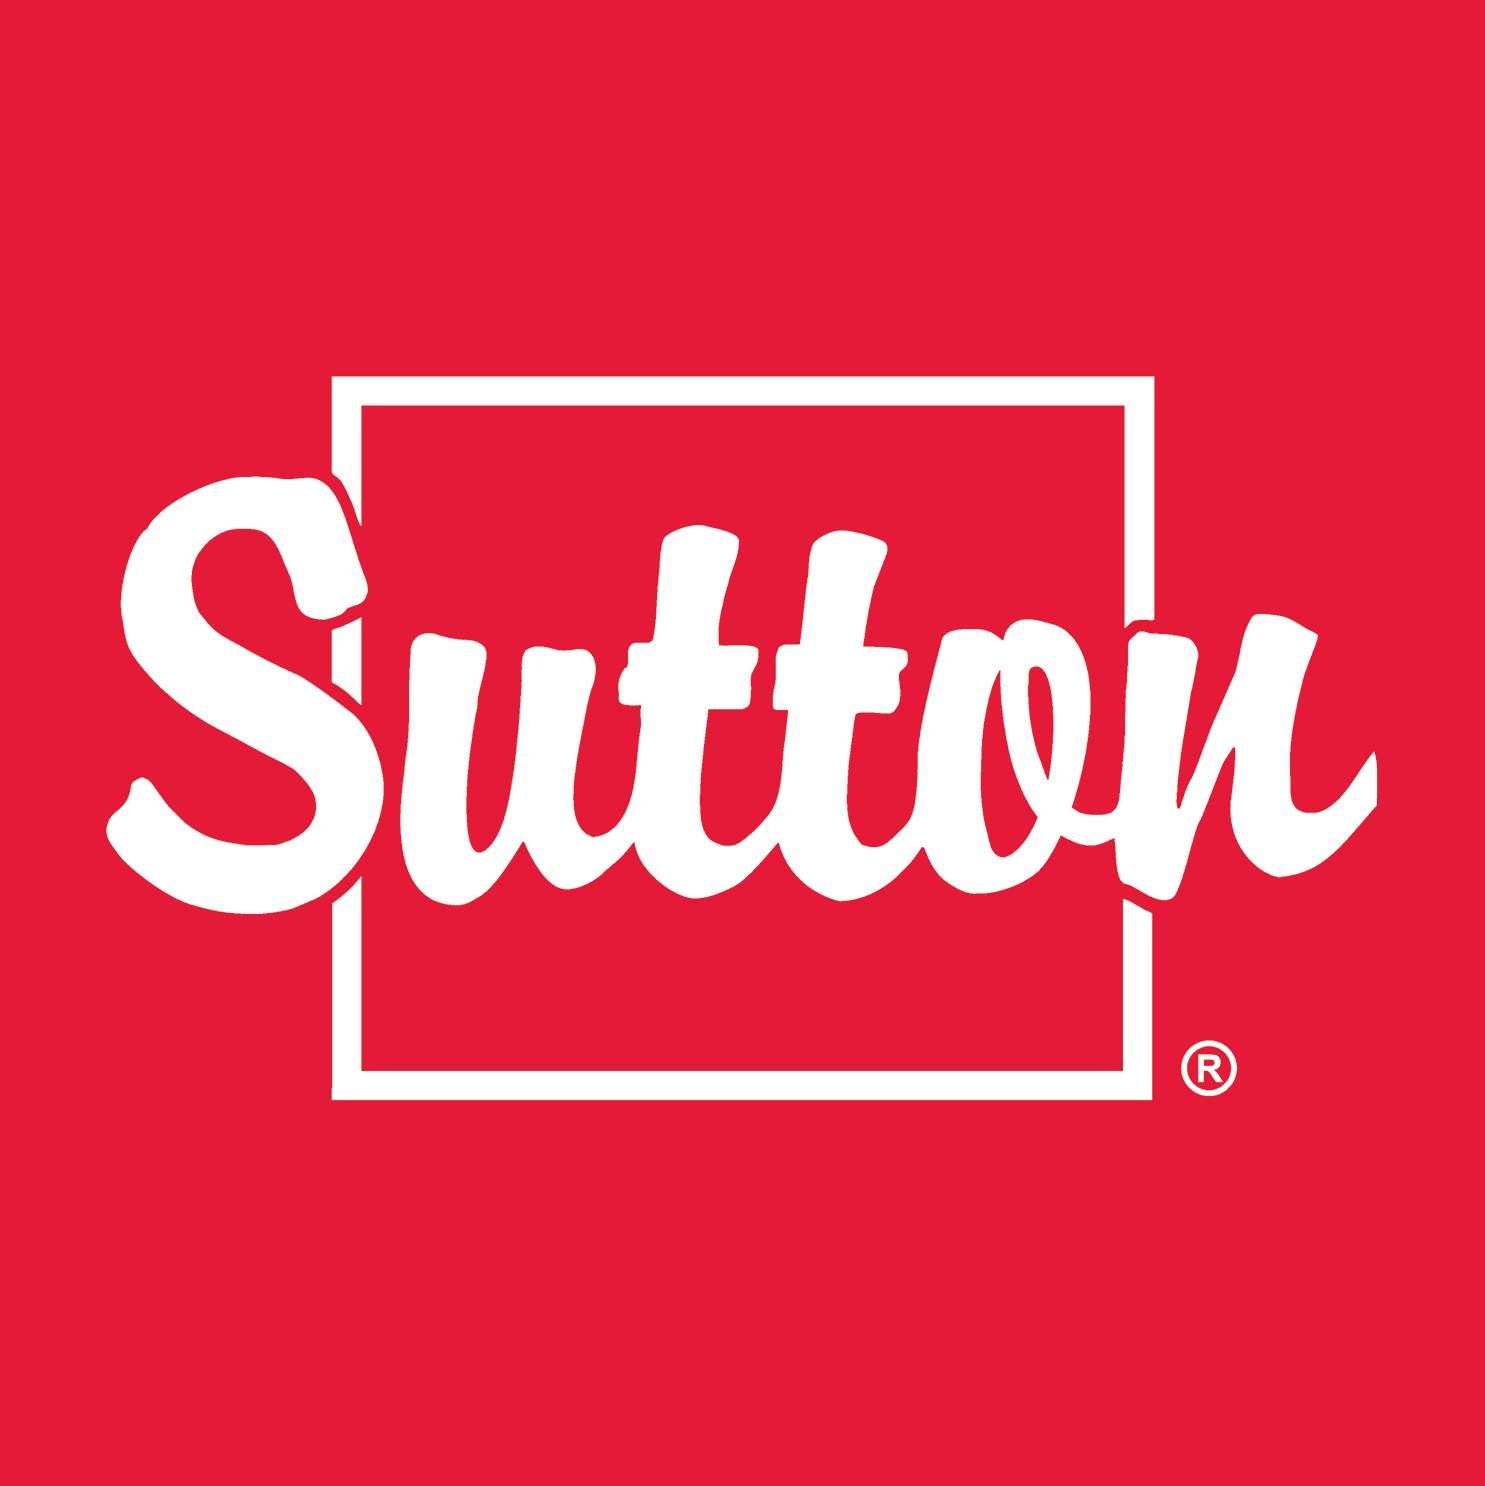 Sutton